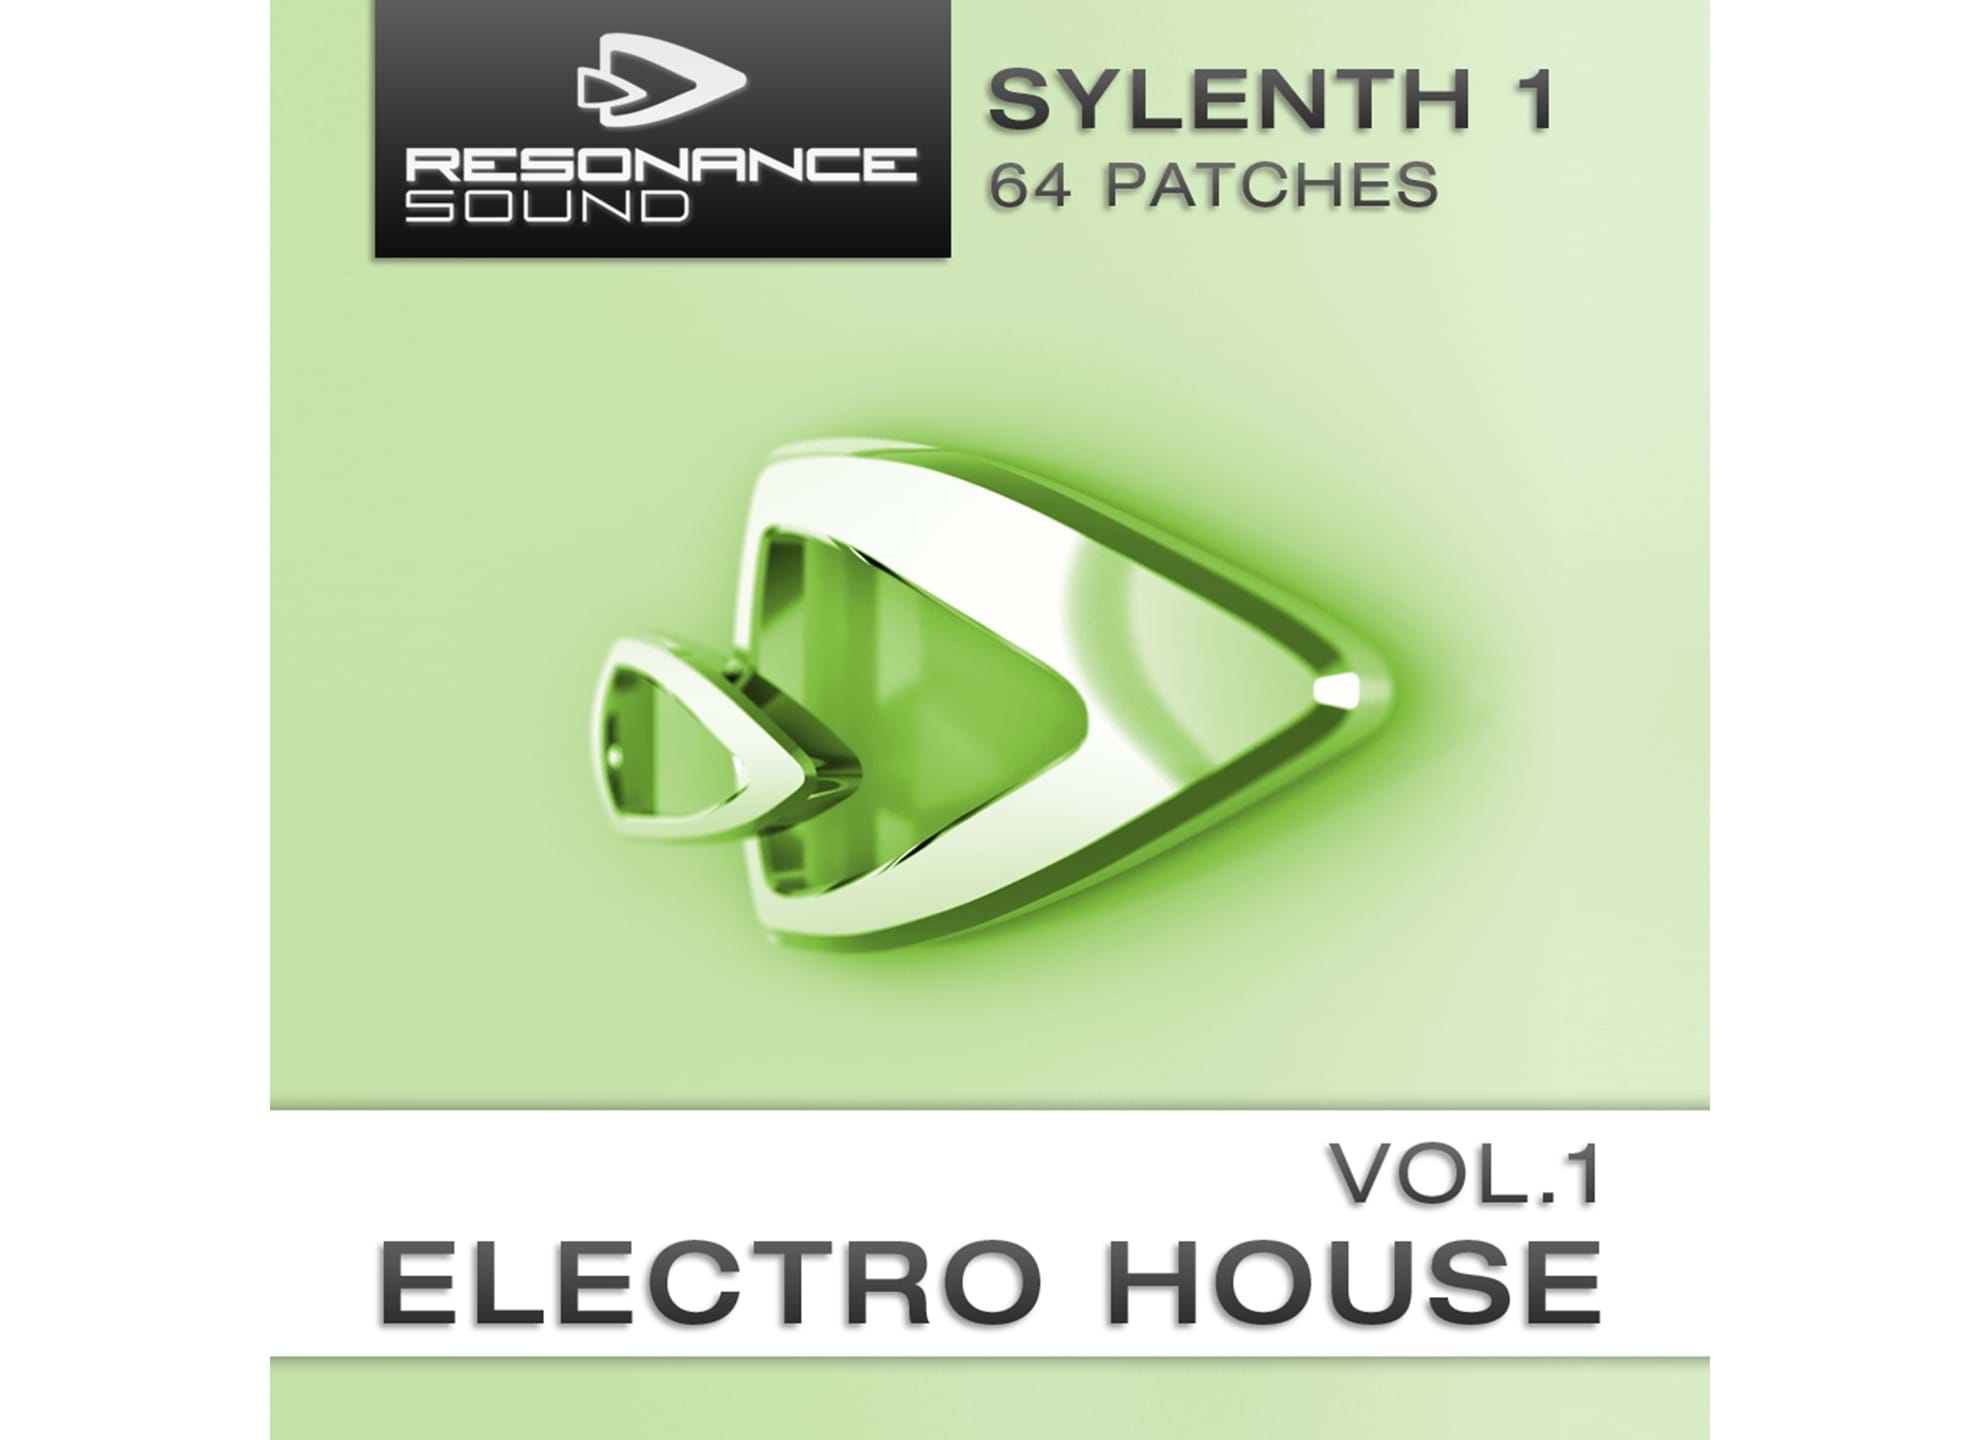 Sylenth1 Electro House Vol 1